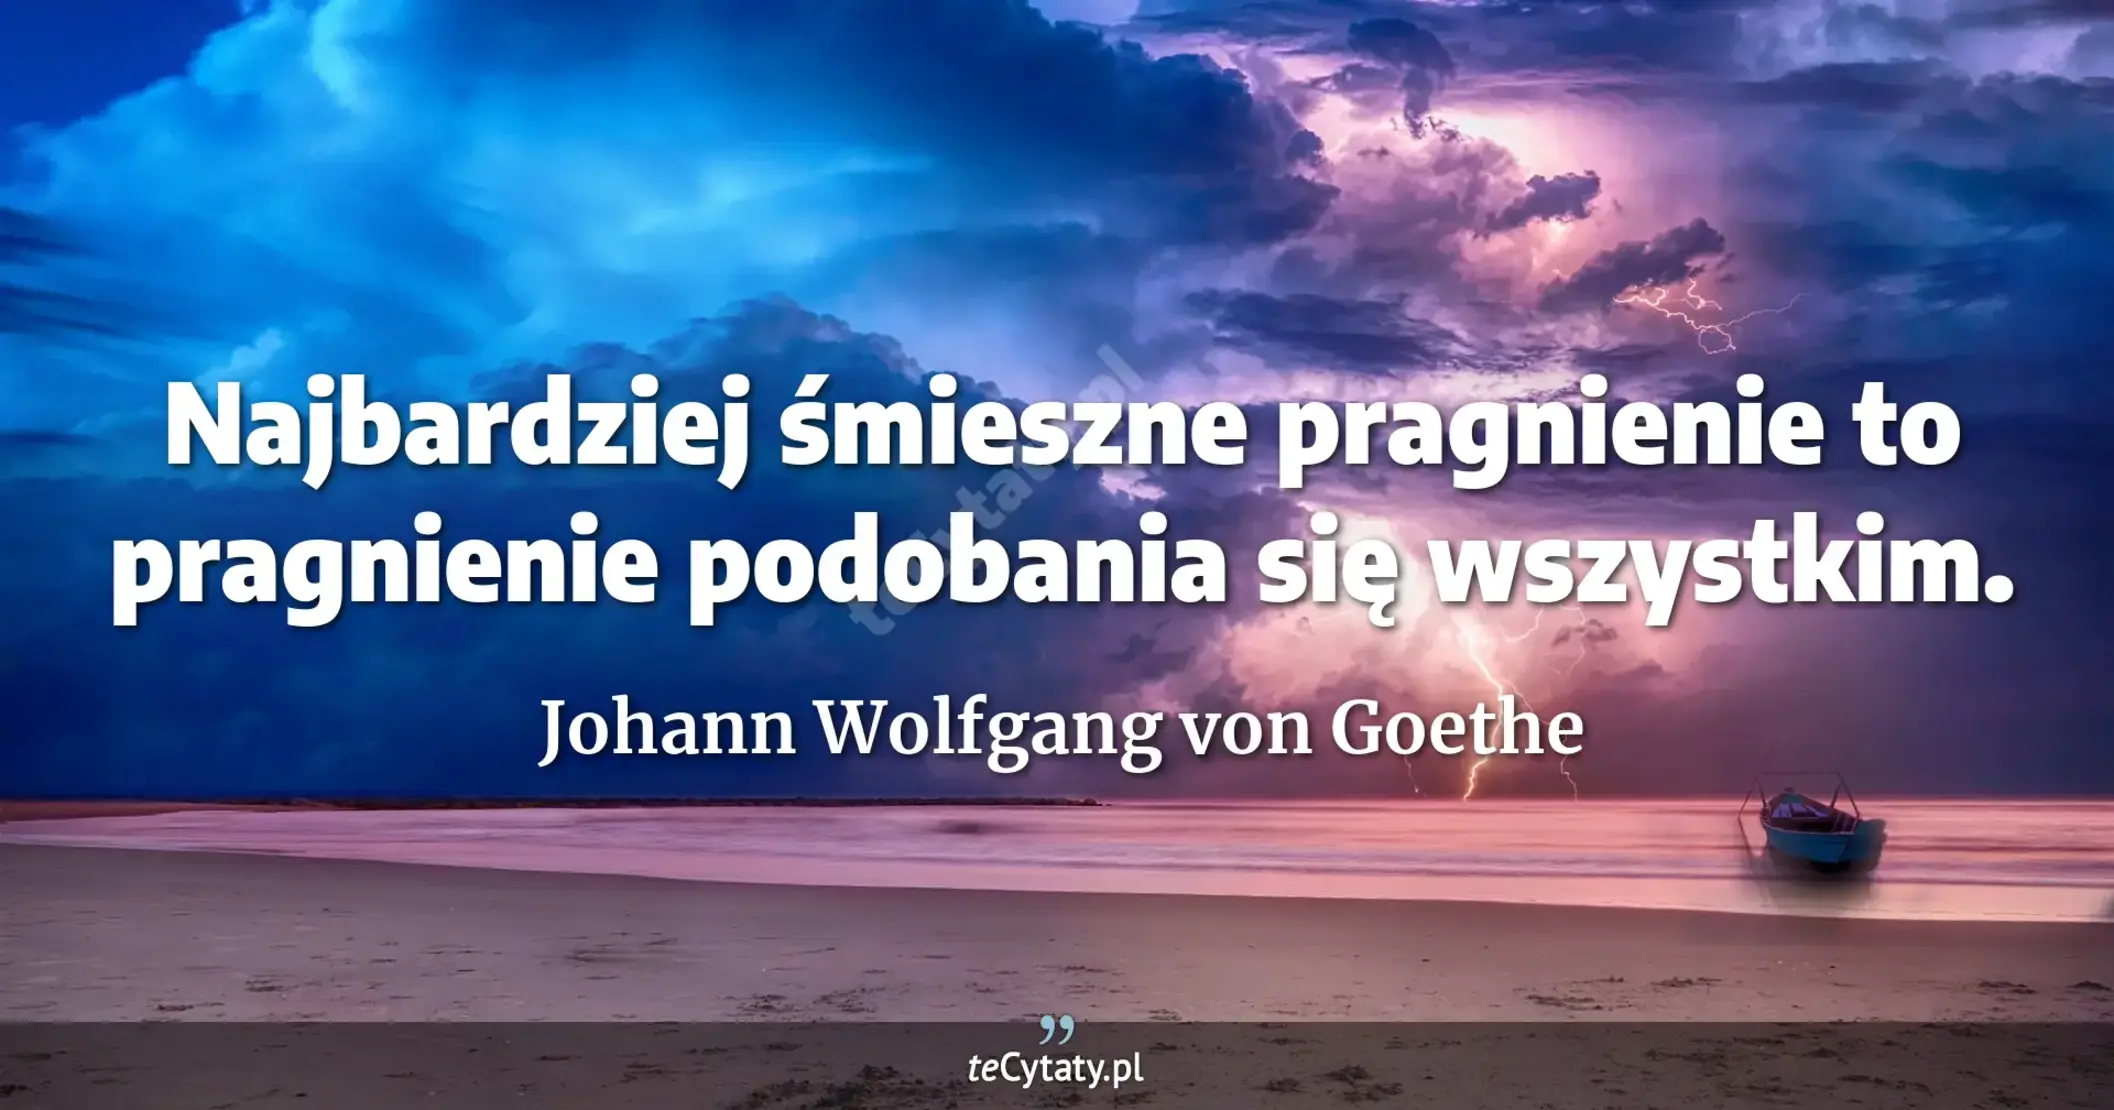 Najbardziej śmieszne pragnienie to pragnienie podobania się wszystkim. - Johann Wolfgang von Goethe